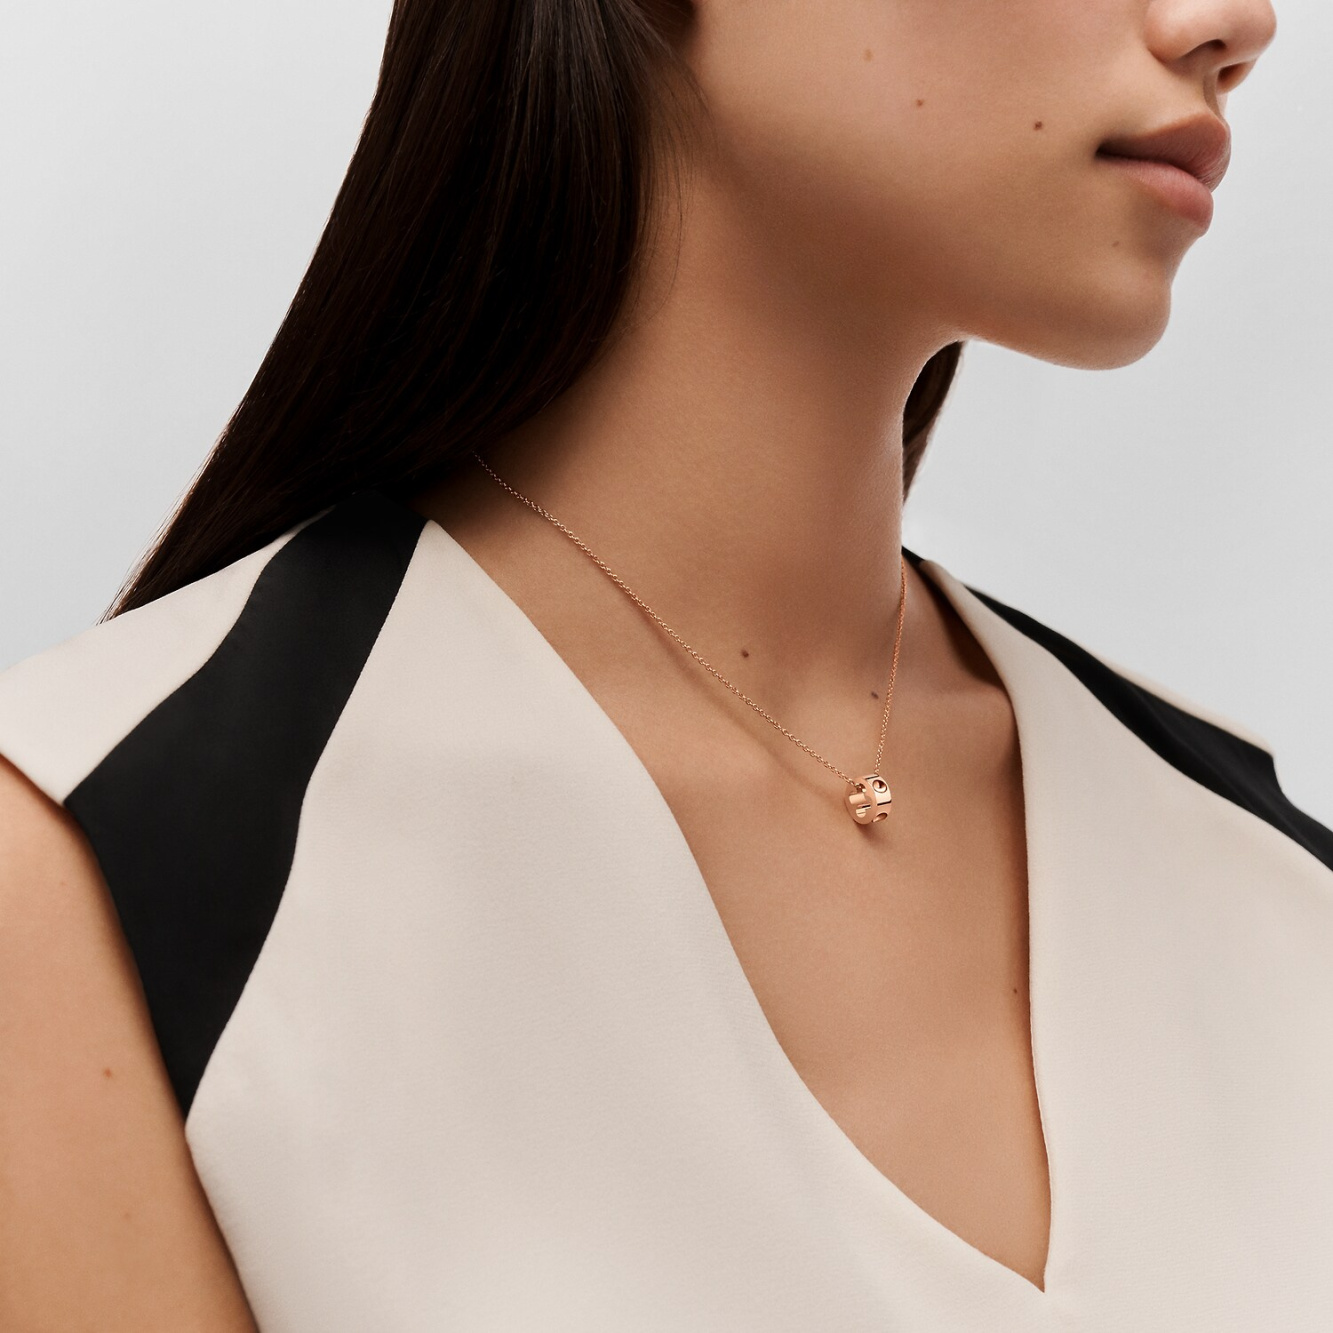 Shop Louis Vuitton 2021 SS Empreinte pendant, pink gold (Q93673, Q93674) by  SolidConnection